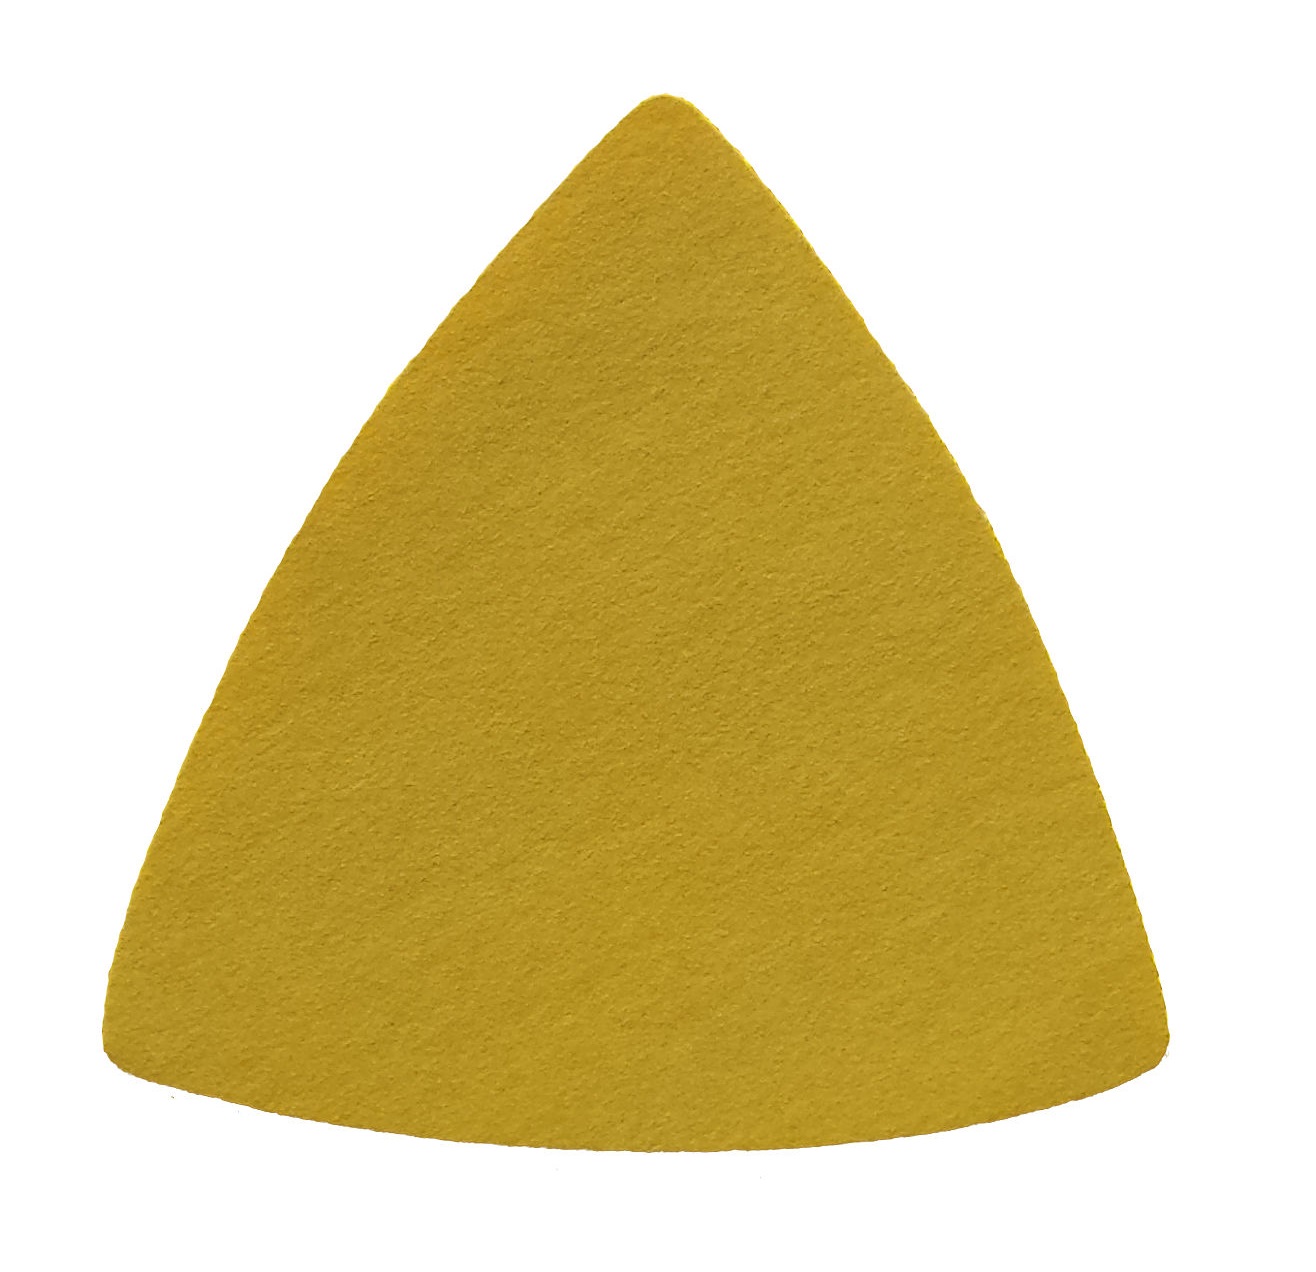 Triunghiuri abrazive - Triunghi abraziv Velcro 255P 79 0G P280, oldindustry.ro